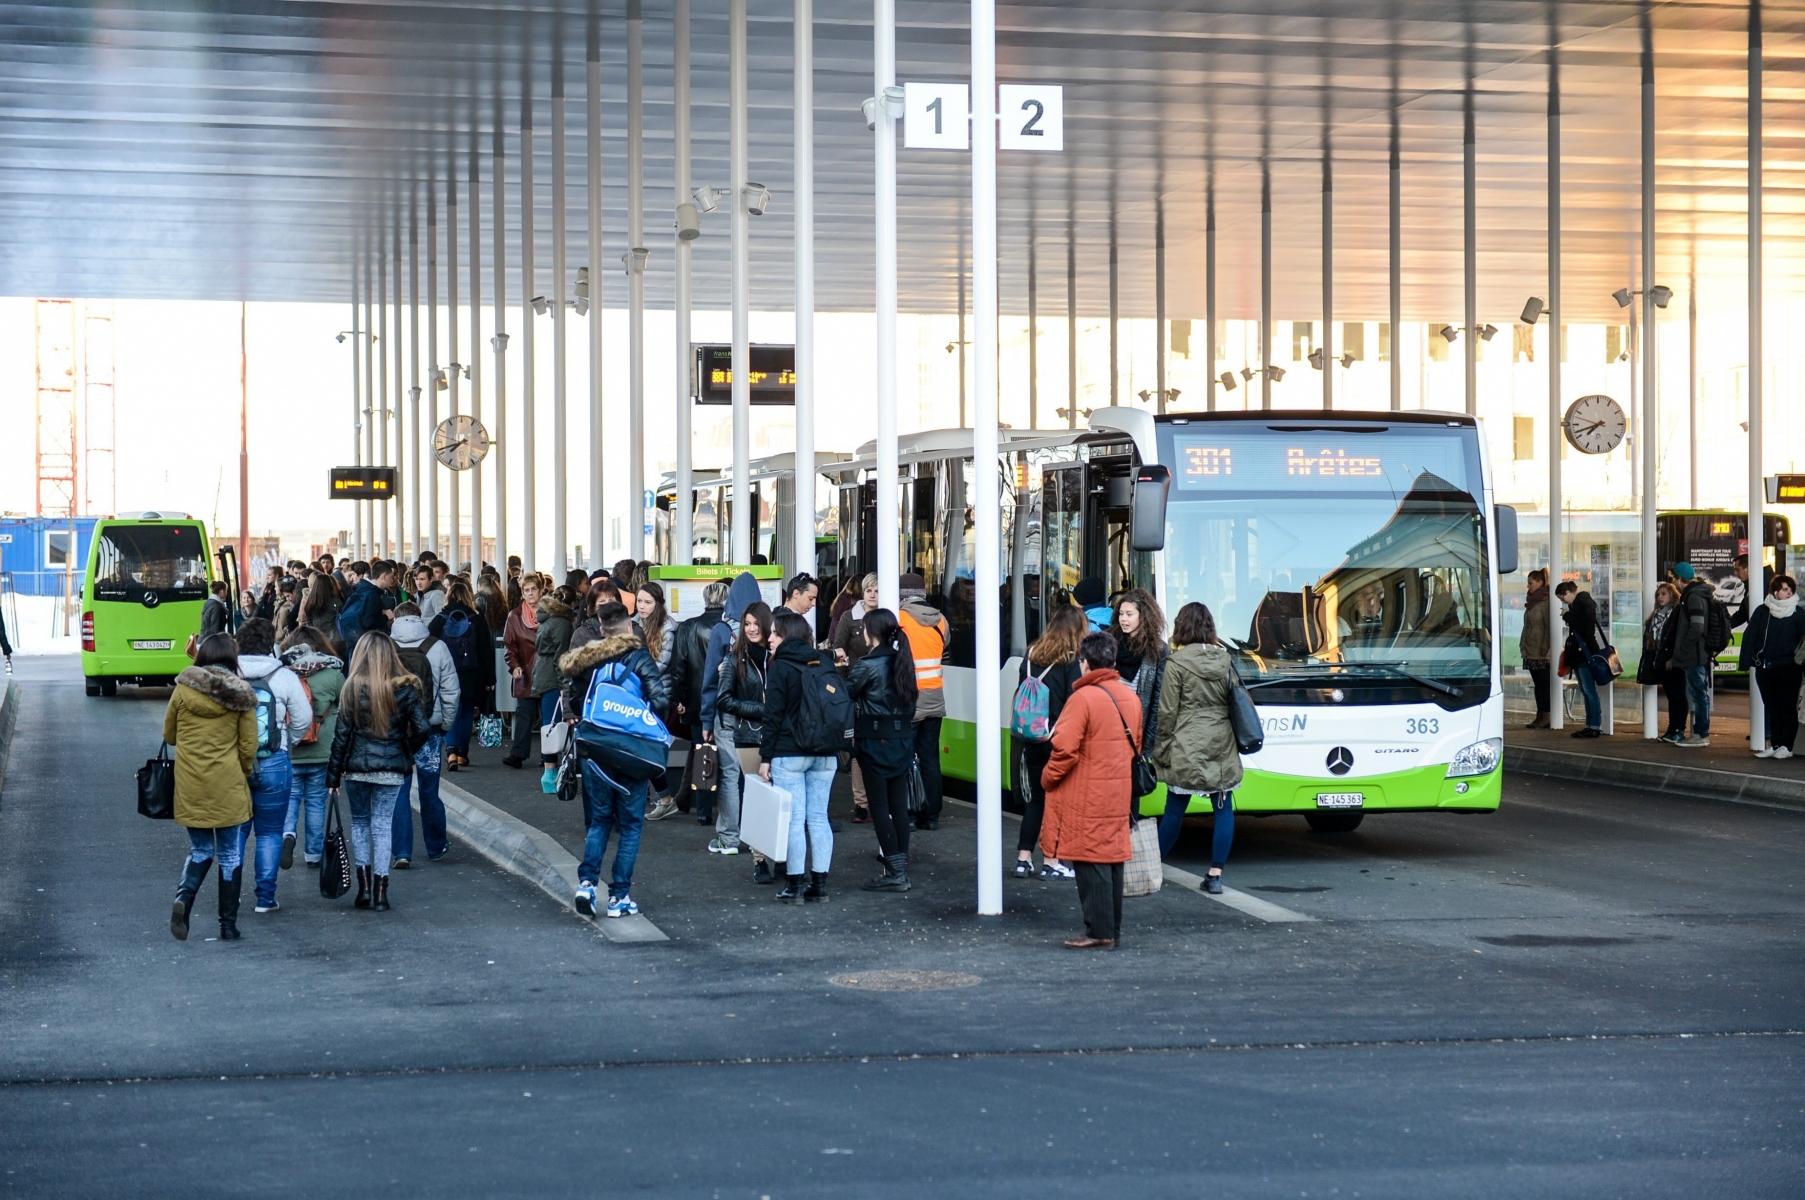 Voyageurs a la gare des bus



LA CHAUX-DE-FONDS 13 03 2015

Photo: CHRISTIAN GALLEY LA CHAUX-DE-FONDS